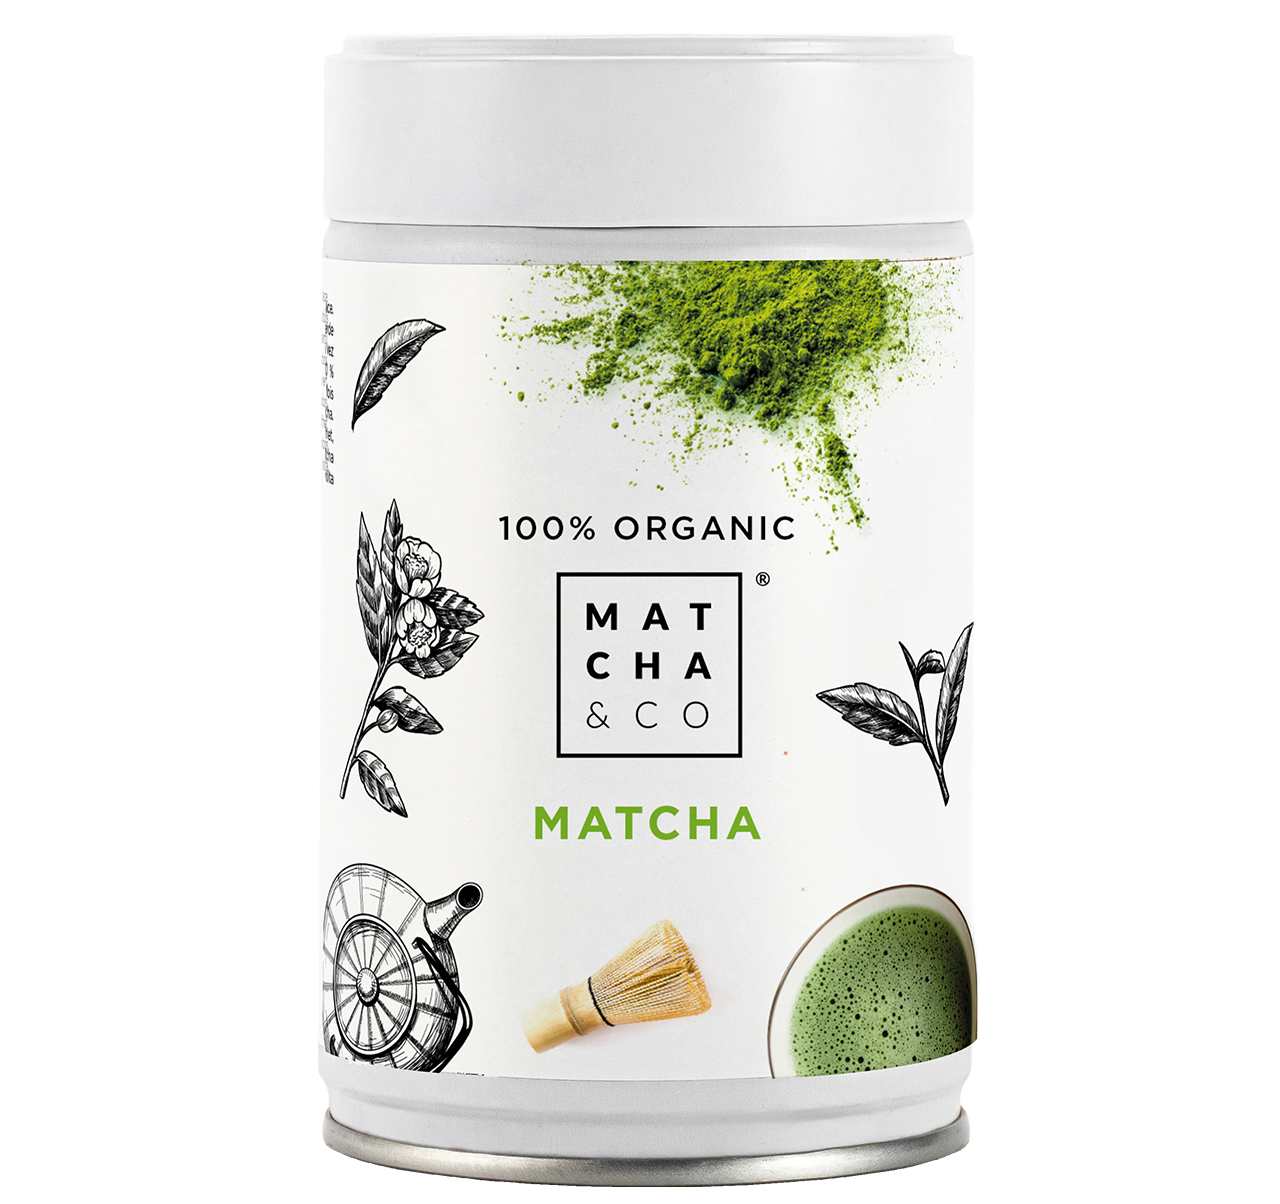 Comprar Té Matcha Original 100% Ecológico. Grado Ceremonial